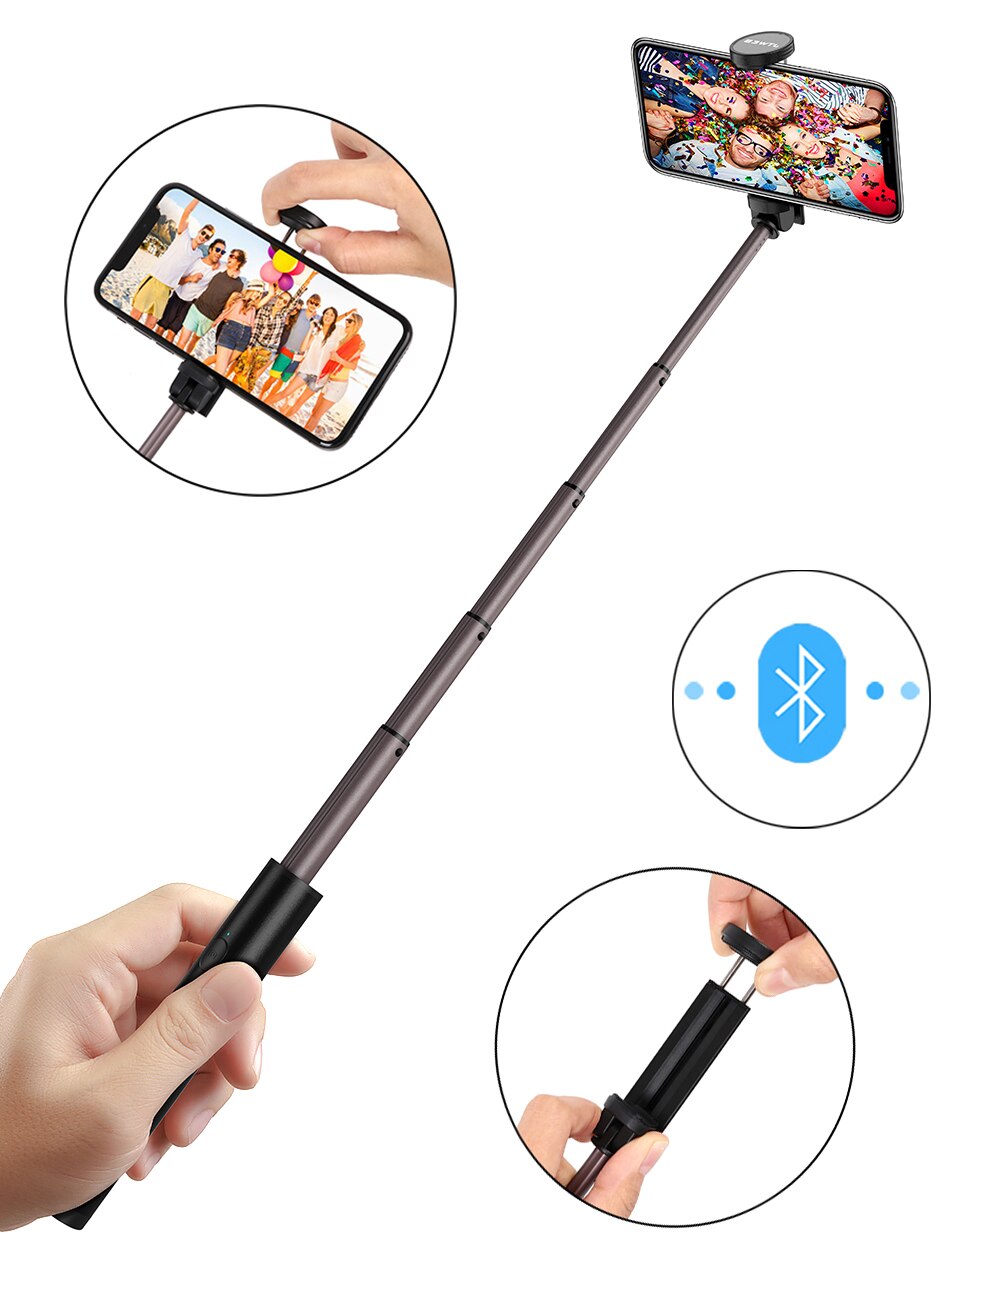 Willkey Draagbare Bluetooth Selfie Stick Handheld Voor Iphone Samsung Huawei Android Smart Telefoon Draadloze Selfiestick Super Licht